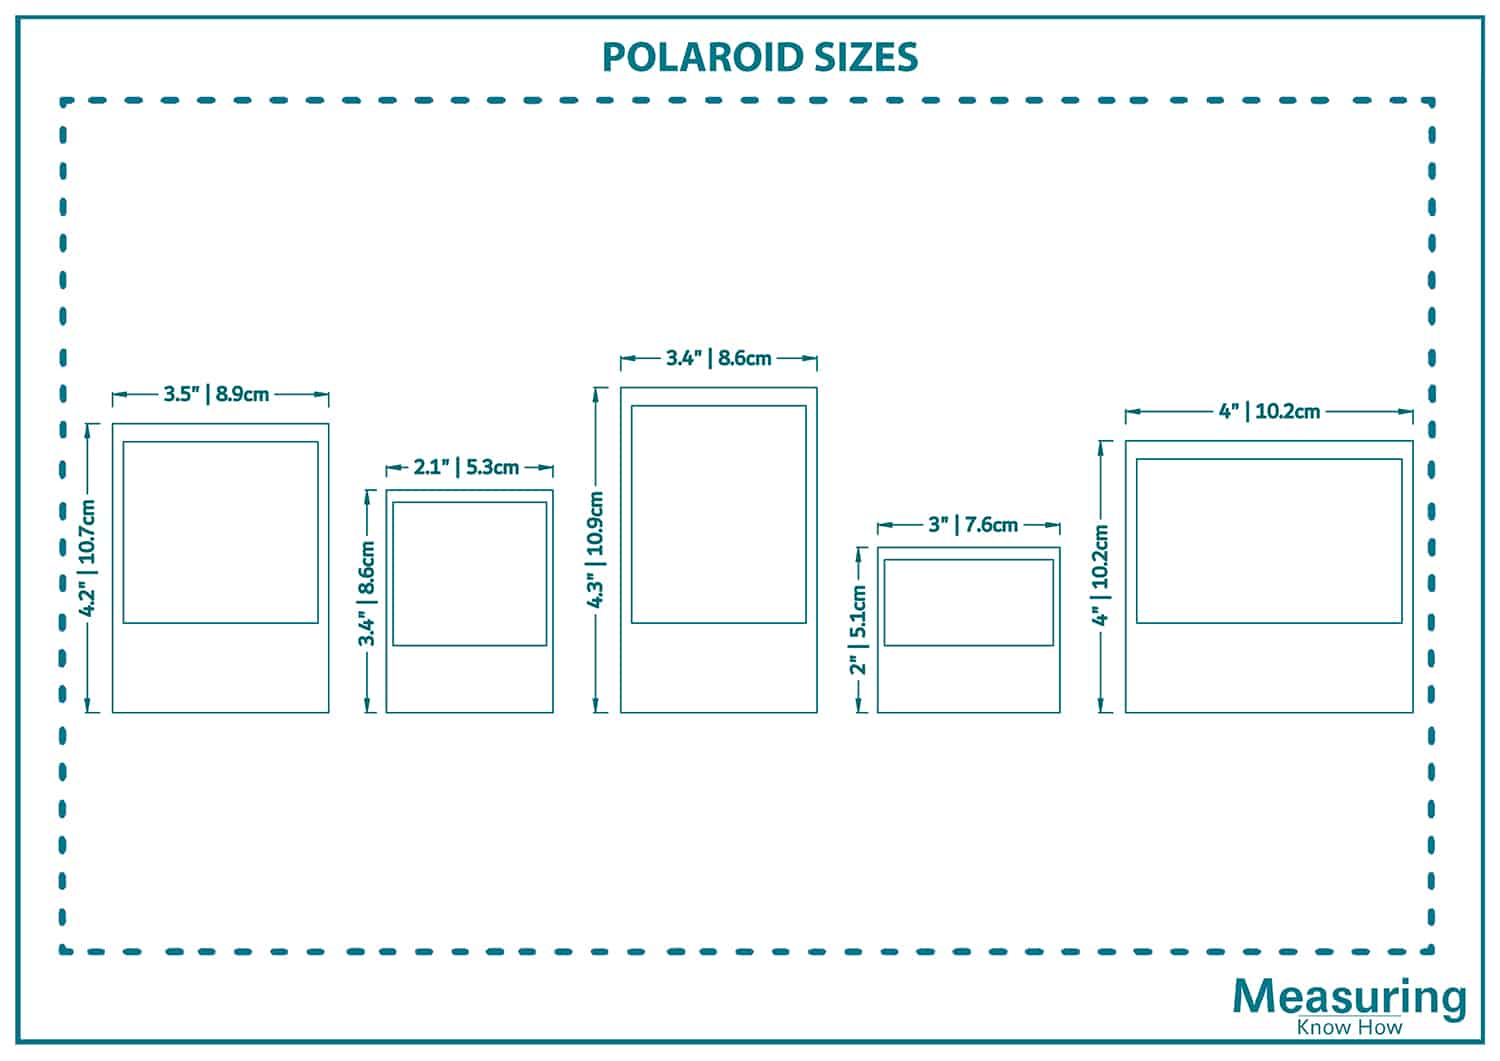 Polaroid sizes